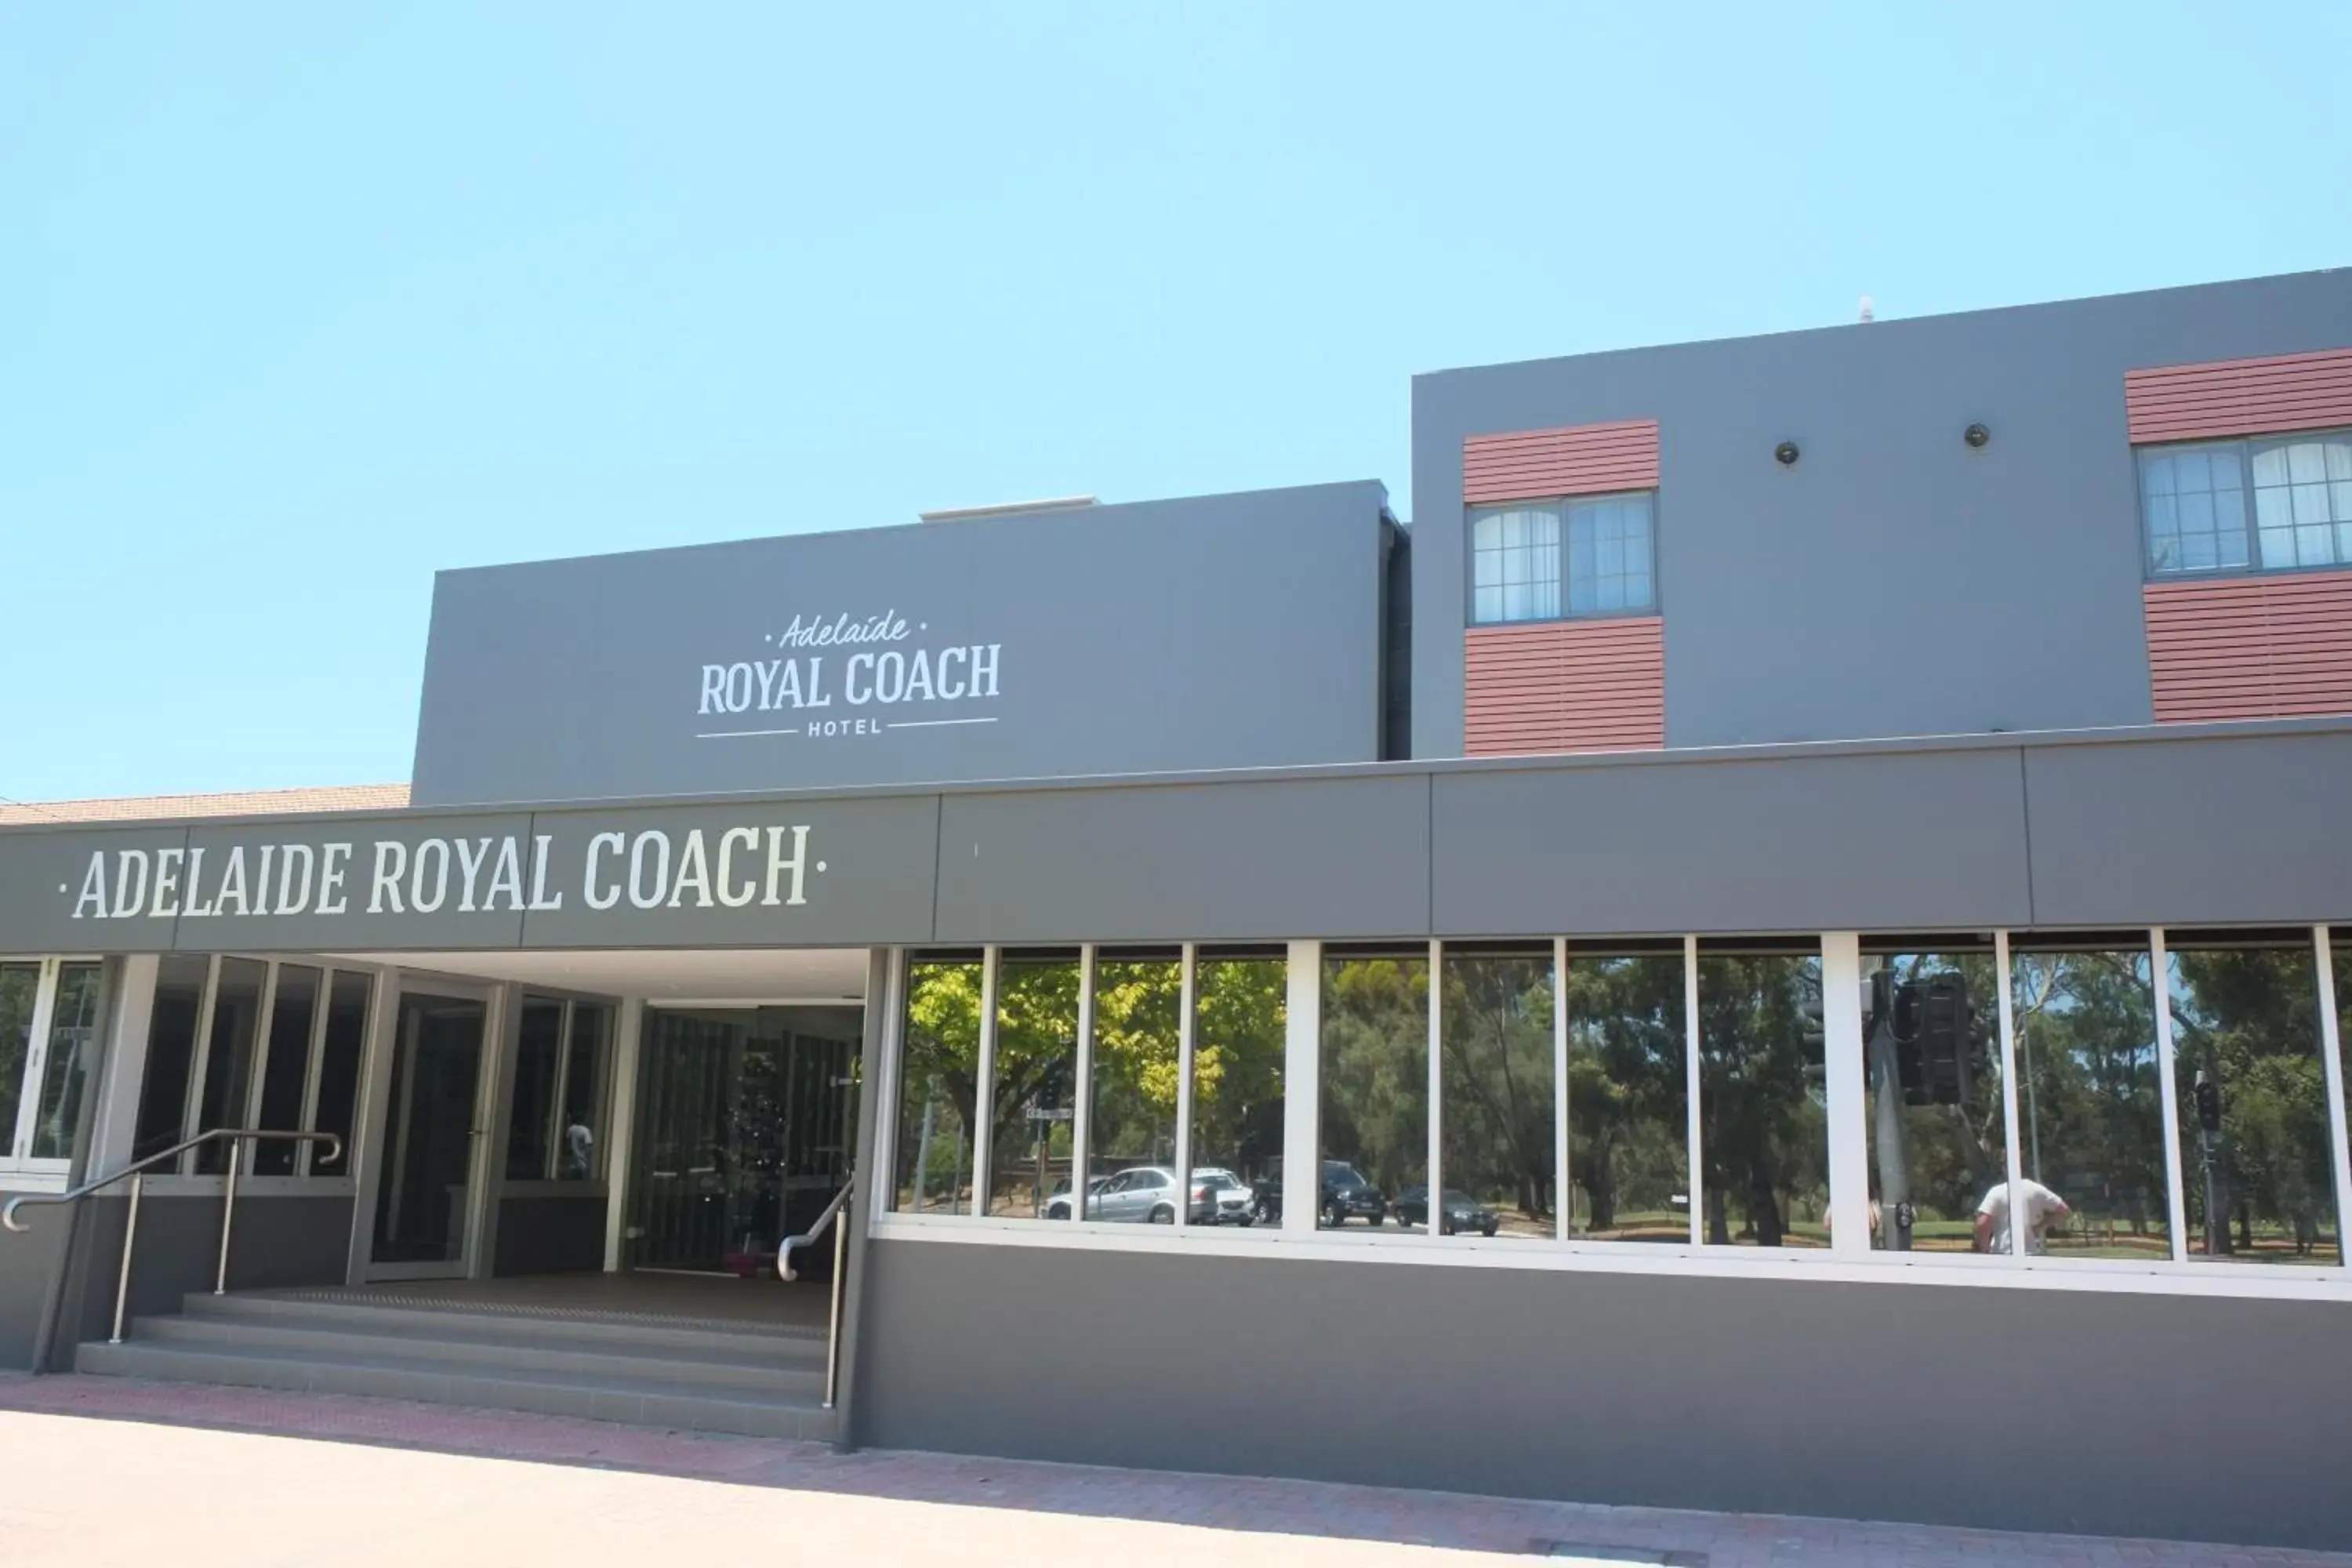 Facade/entrance, Property Building in Adelaide Royal Coach